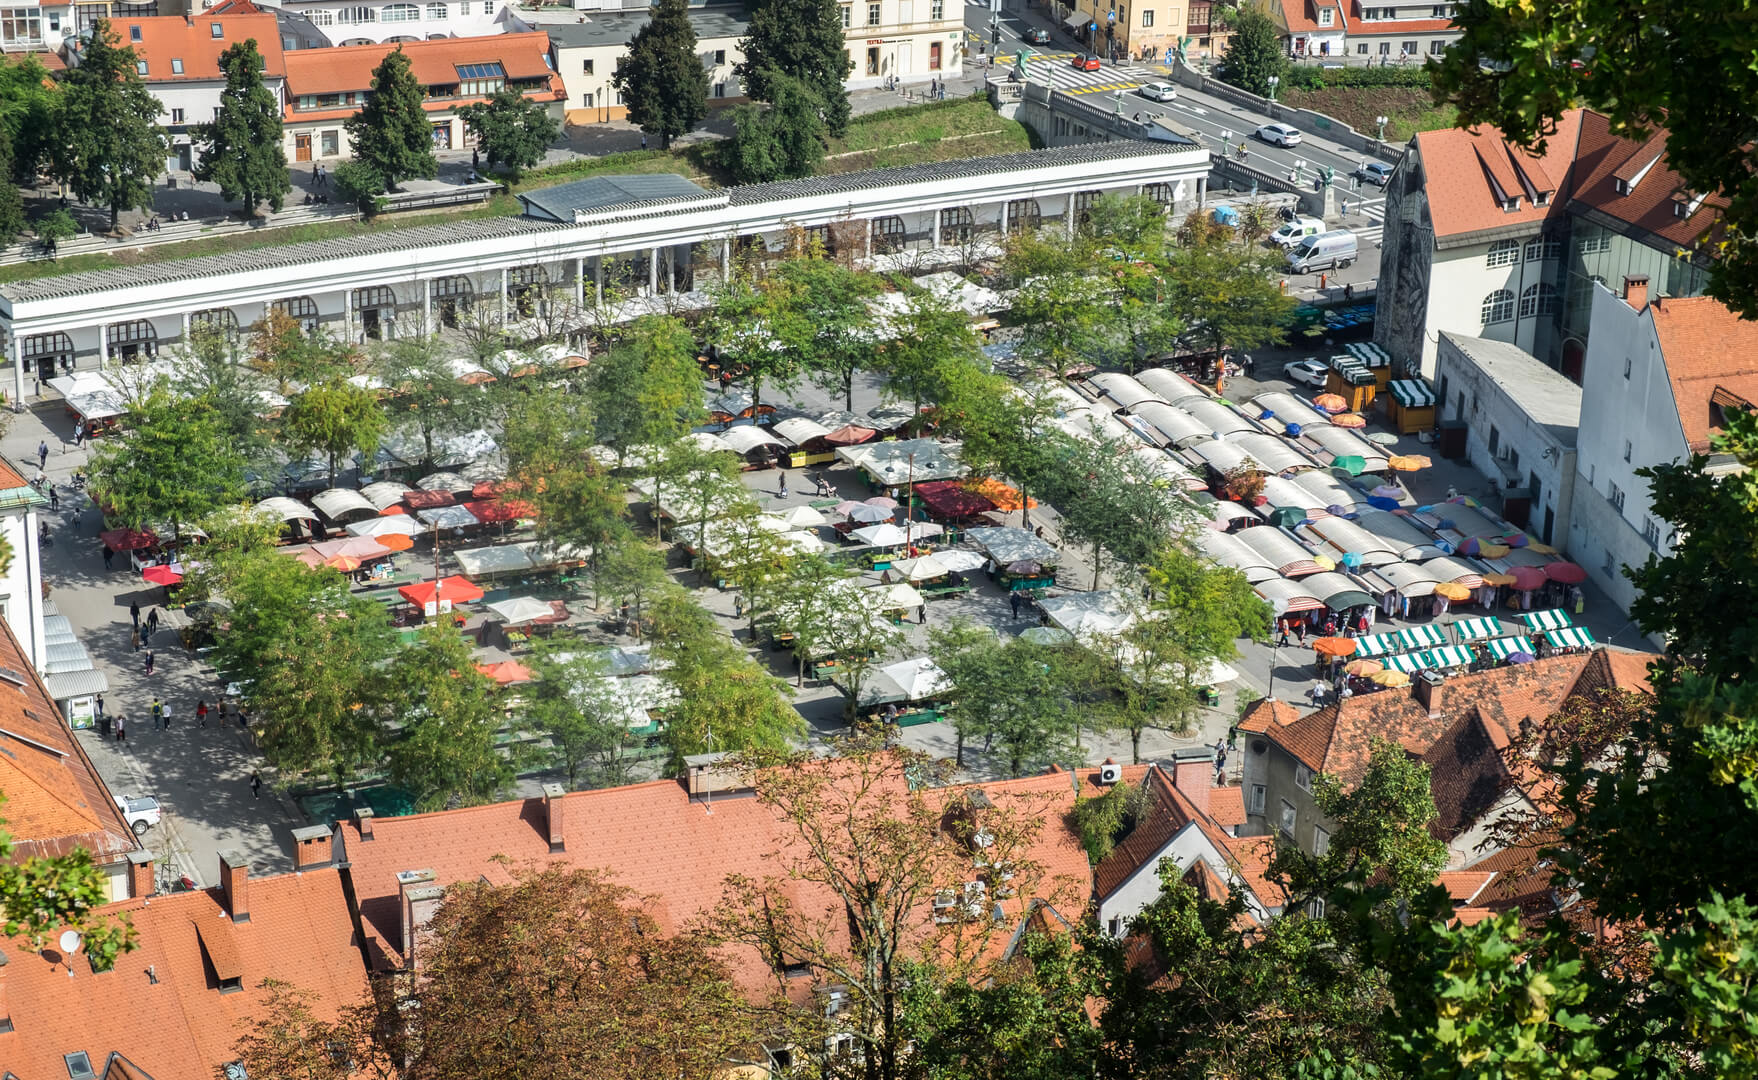 Aerial view of Ljubljana central market.